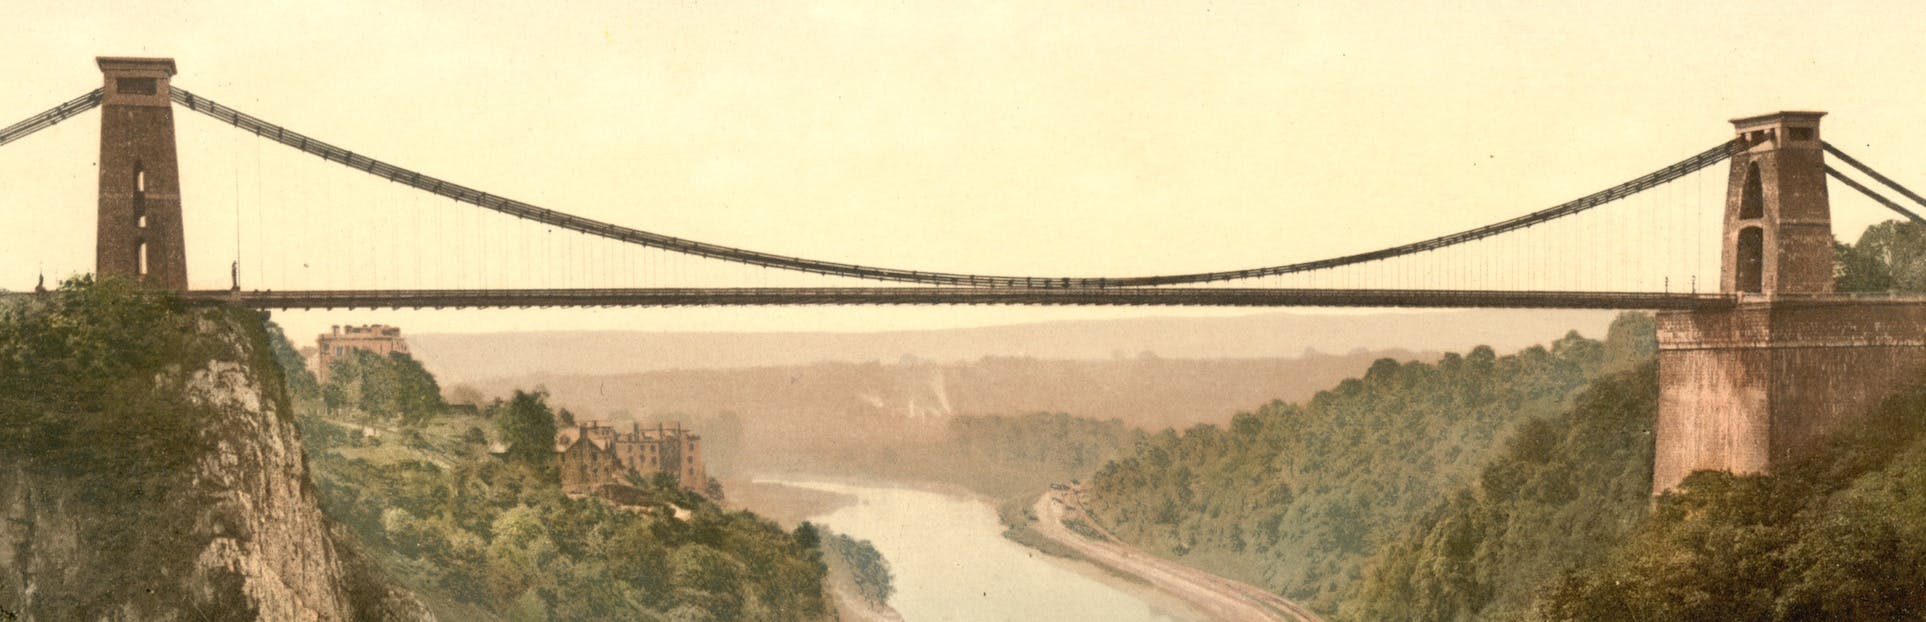 Descubra o barco e a ponte de Brunel em um passeio de áudio autoguiado em Bristol